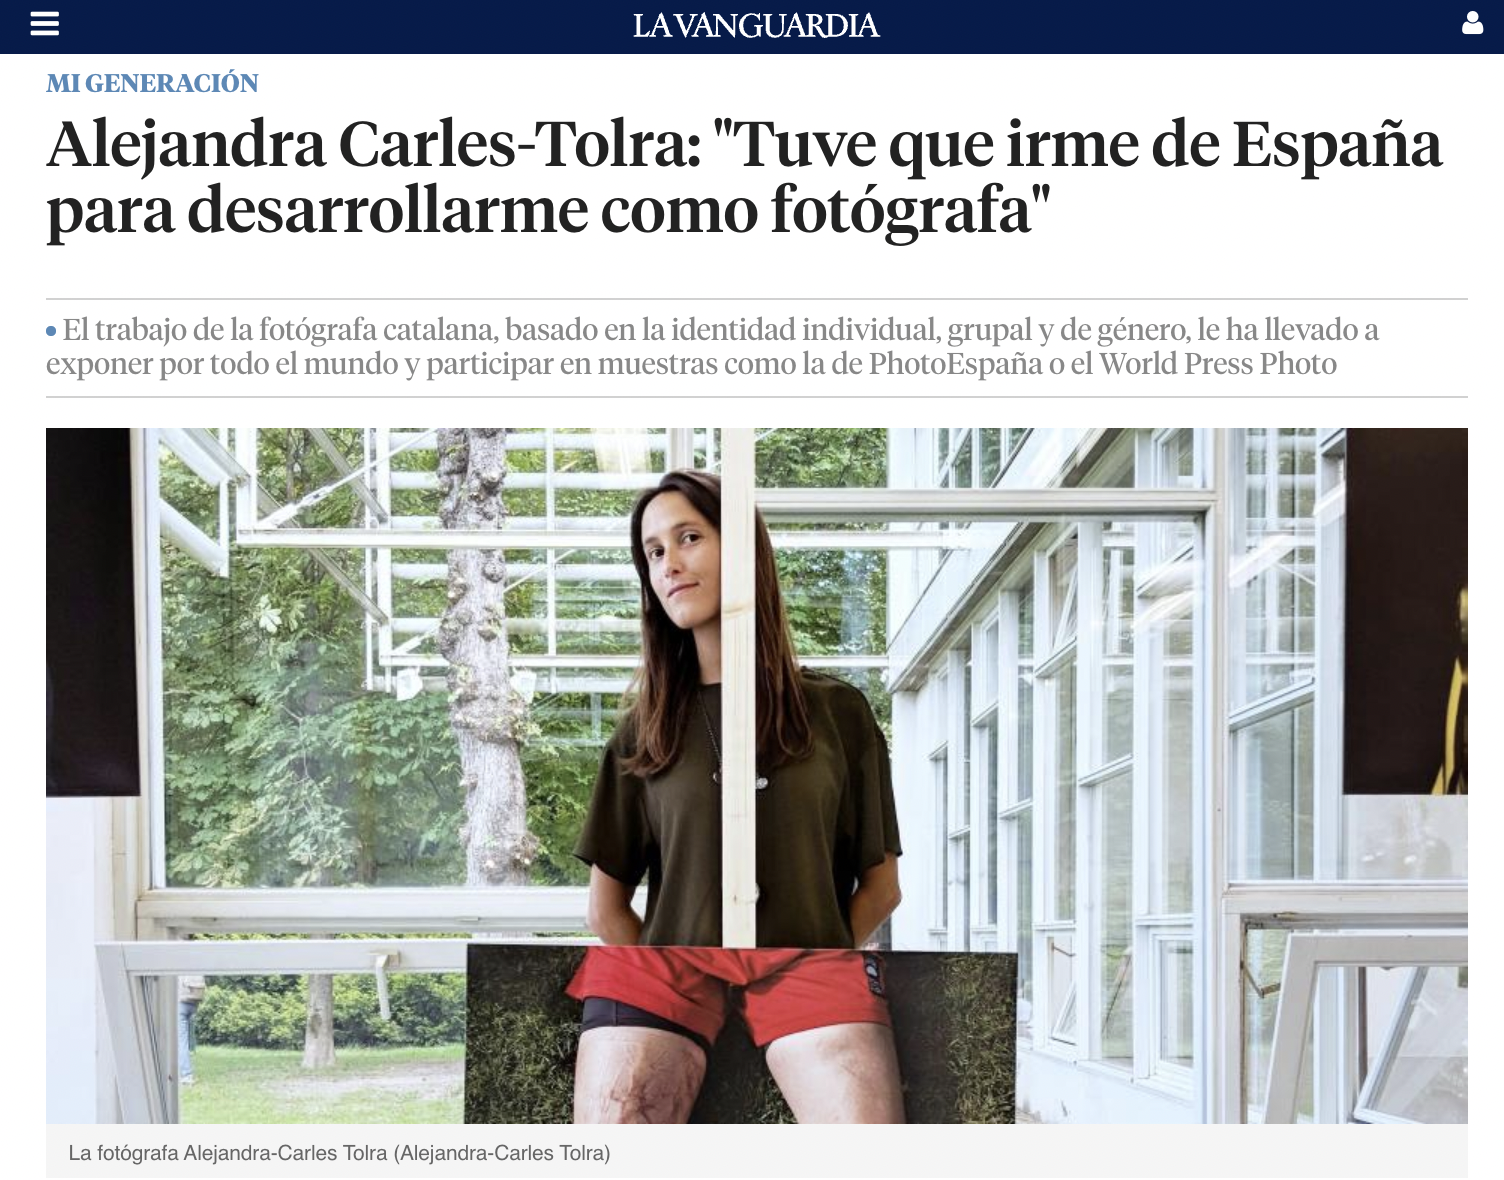 La Vanguardia: "Tuve que irme de España para desarrollarme como fotógrafa"